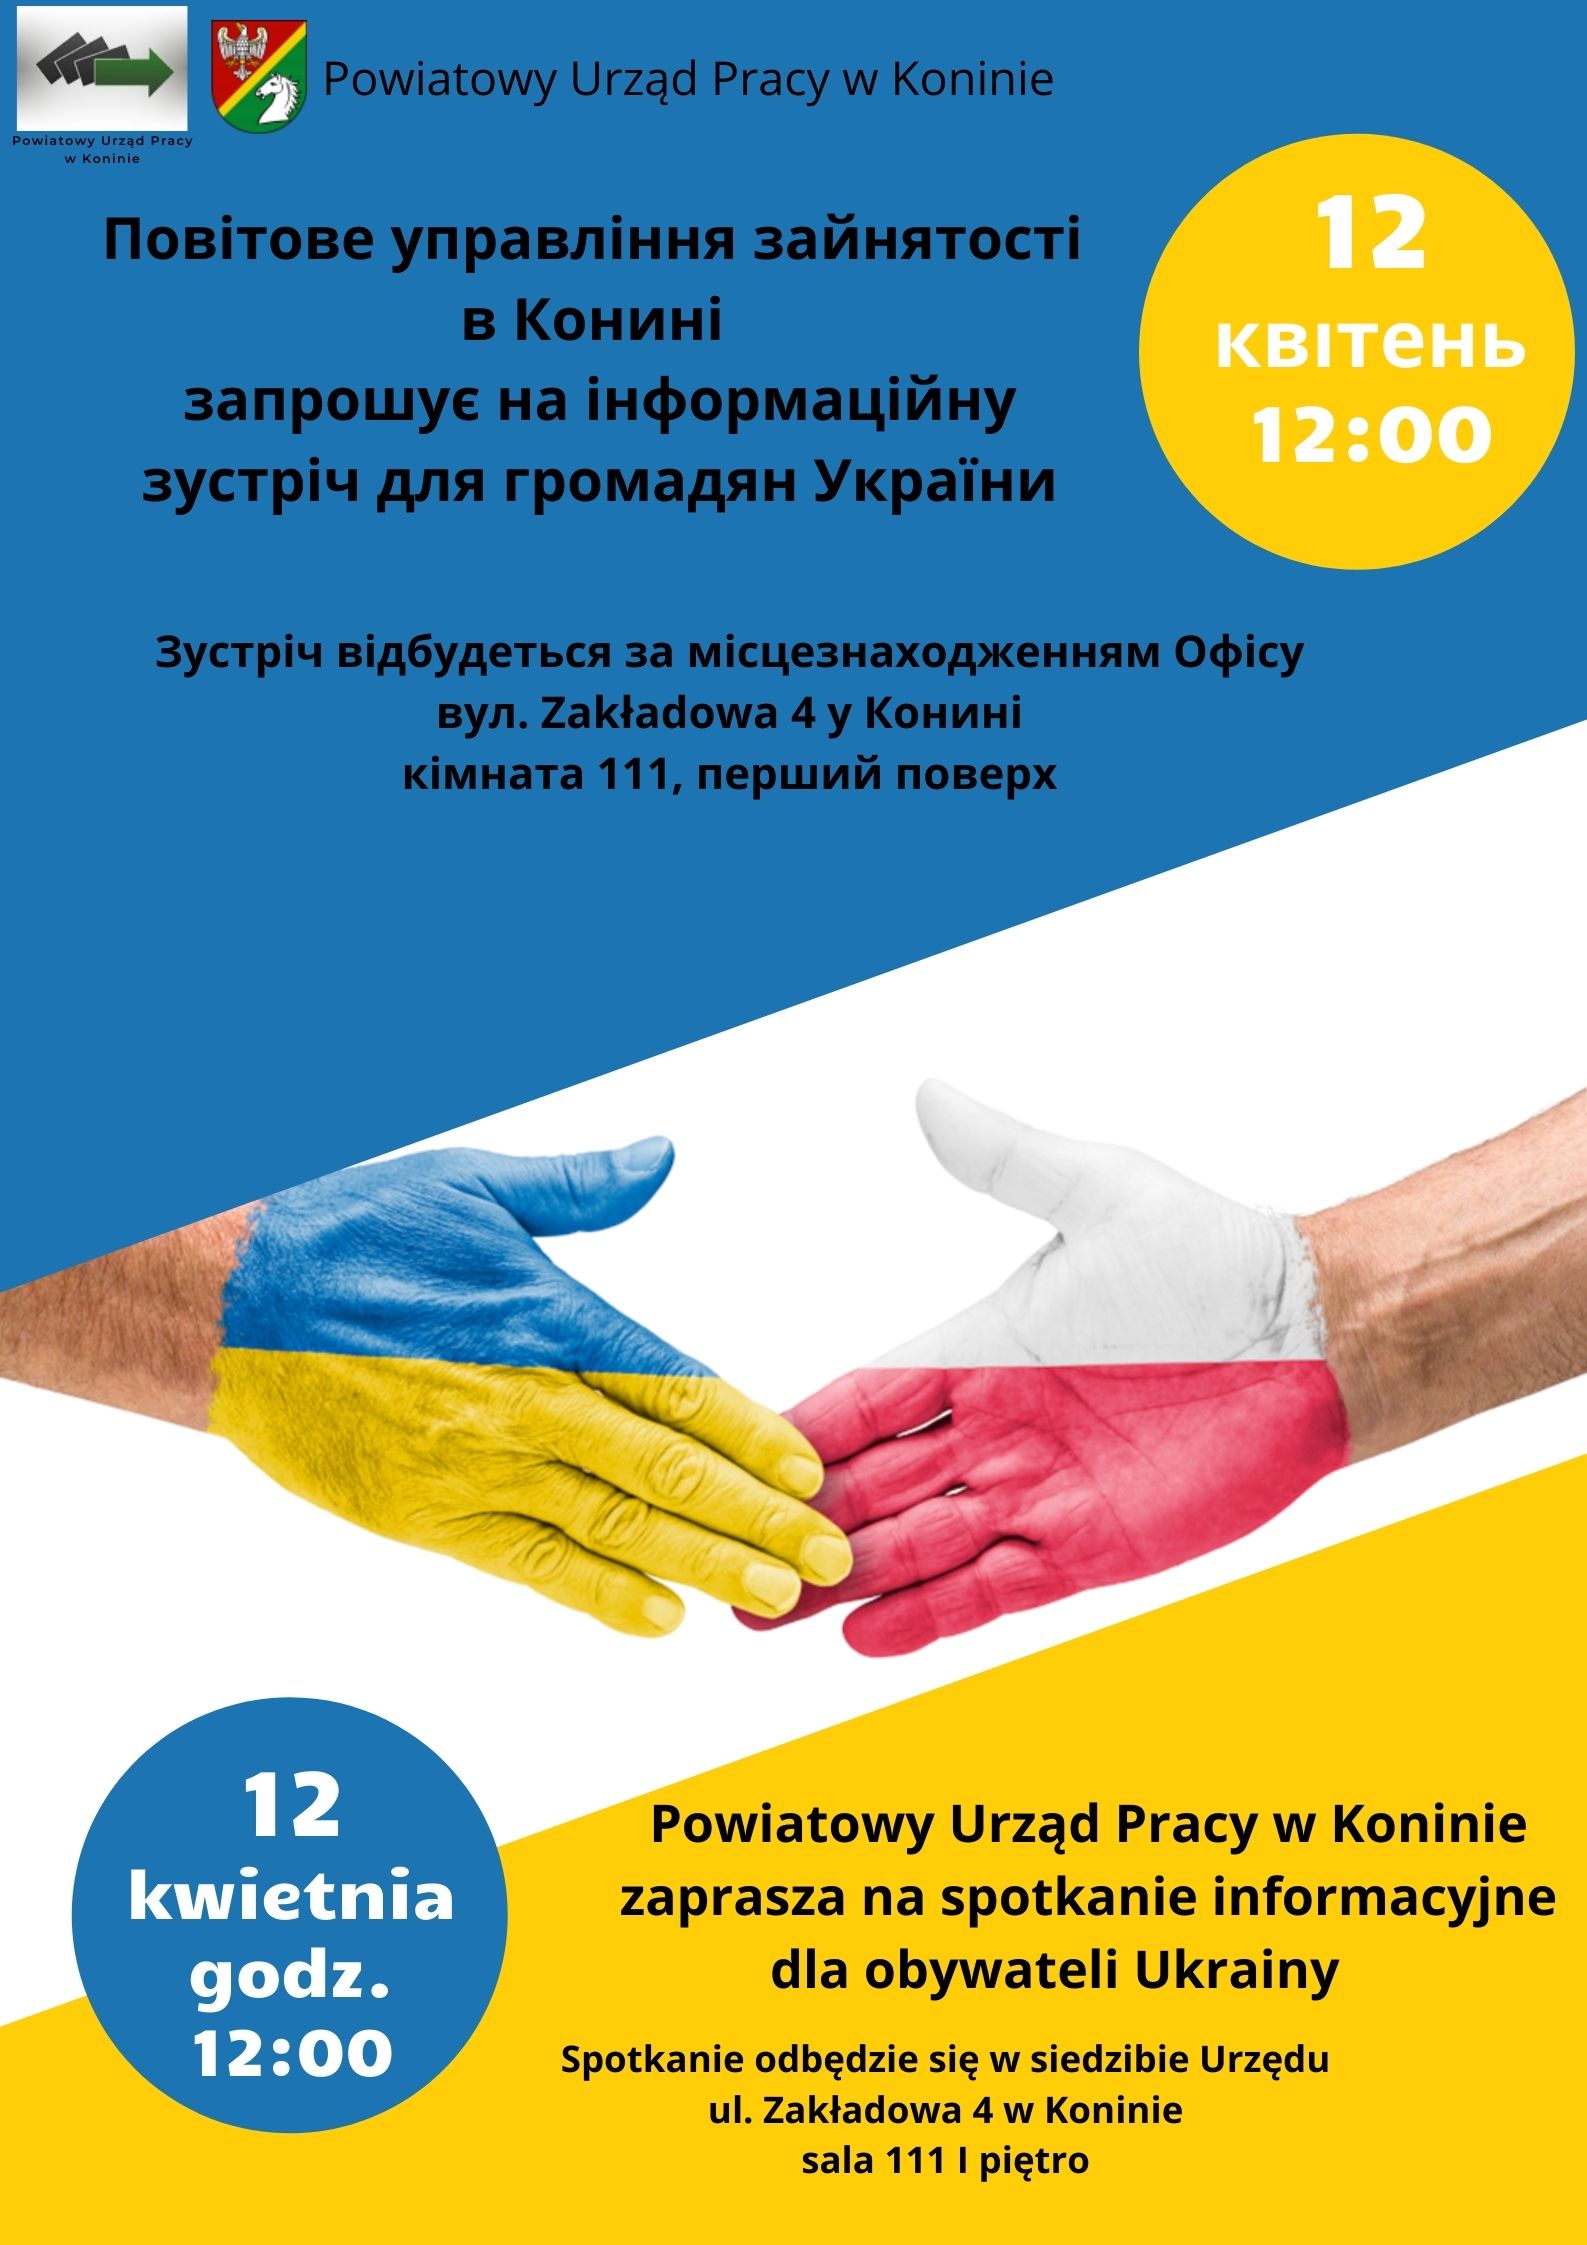 Plakat promujący spotkanie informacyjne dla osób z Ukrainy w Powiatowym Urzędzie Pracy w Koninie